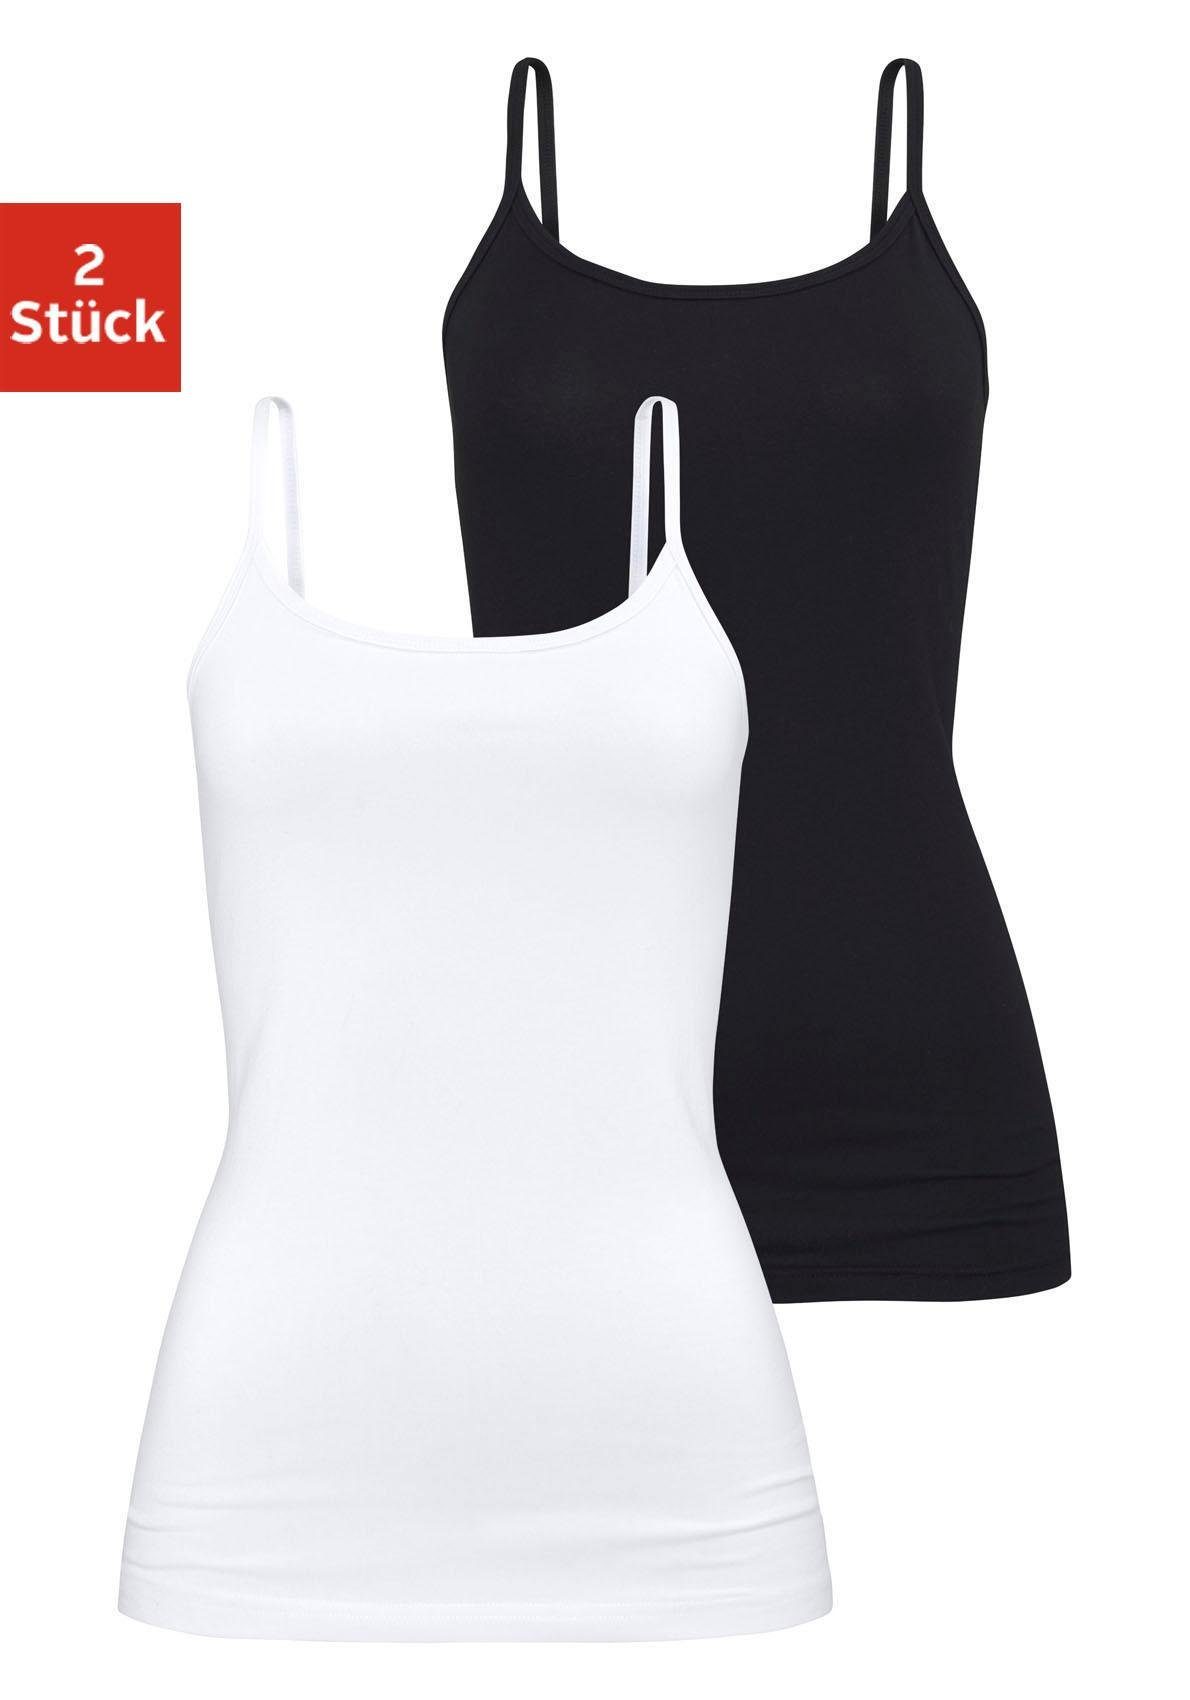 H.I.S Unterhemd (2er-Pack) aus weiß Unterziehshirt Spaghettiträger-Top, Baumwoll-Qualität, schwarz, elastischer